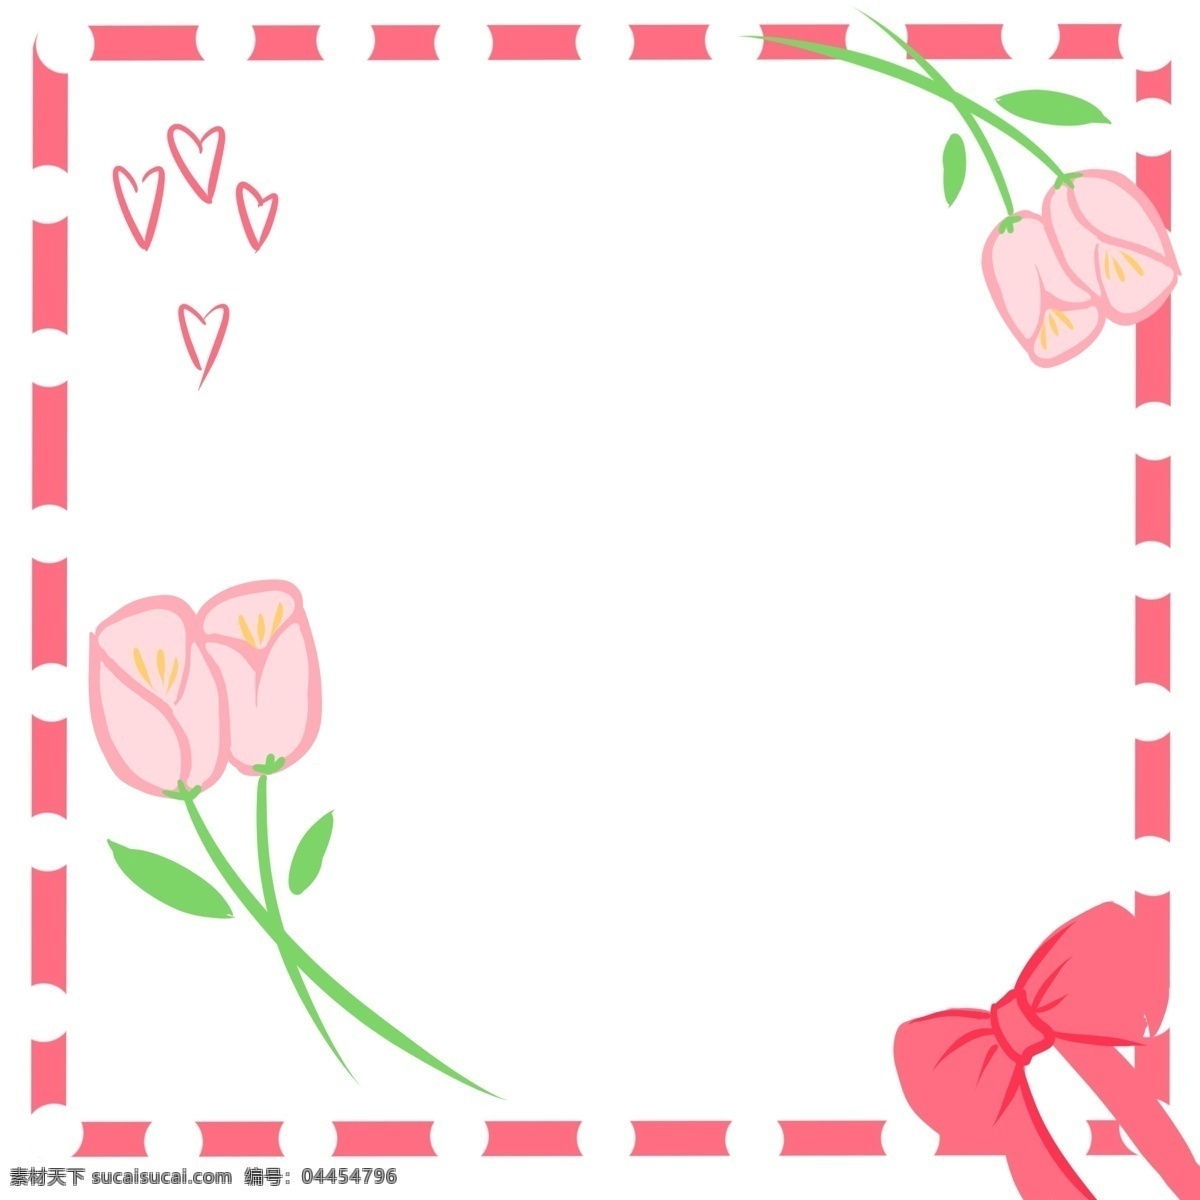 母亲节 卡通 花朵 边框 卡通手绘 儿童 可爱 美丽 花朵边框 框 边框纹理 创意 康乃馨 妈妈 母亲 节日